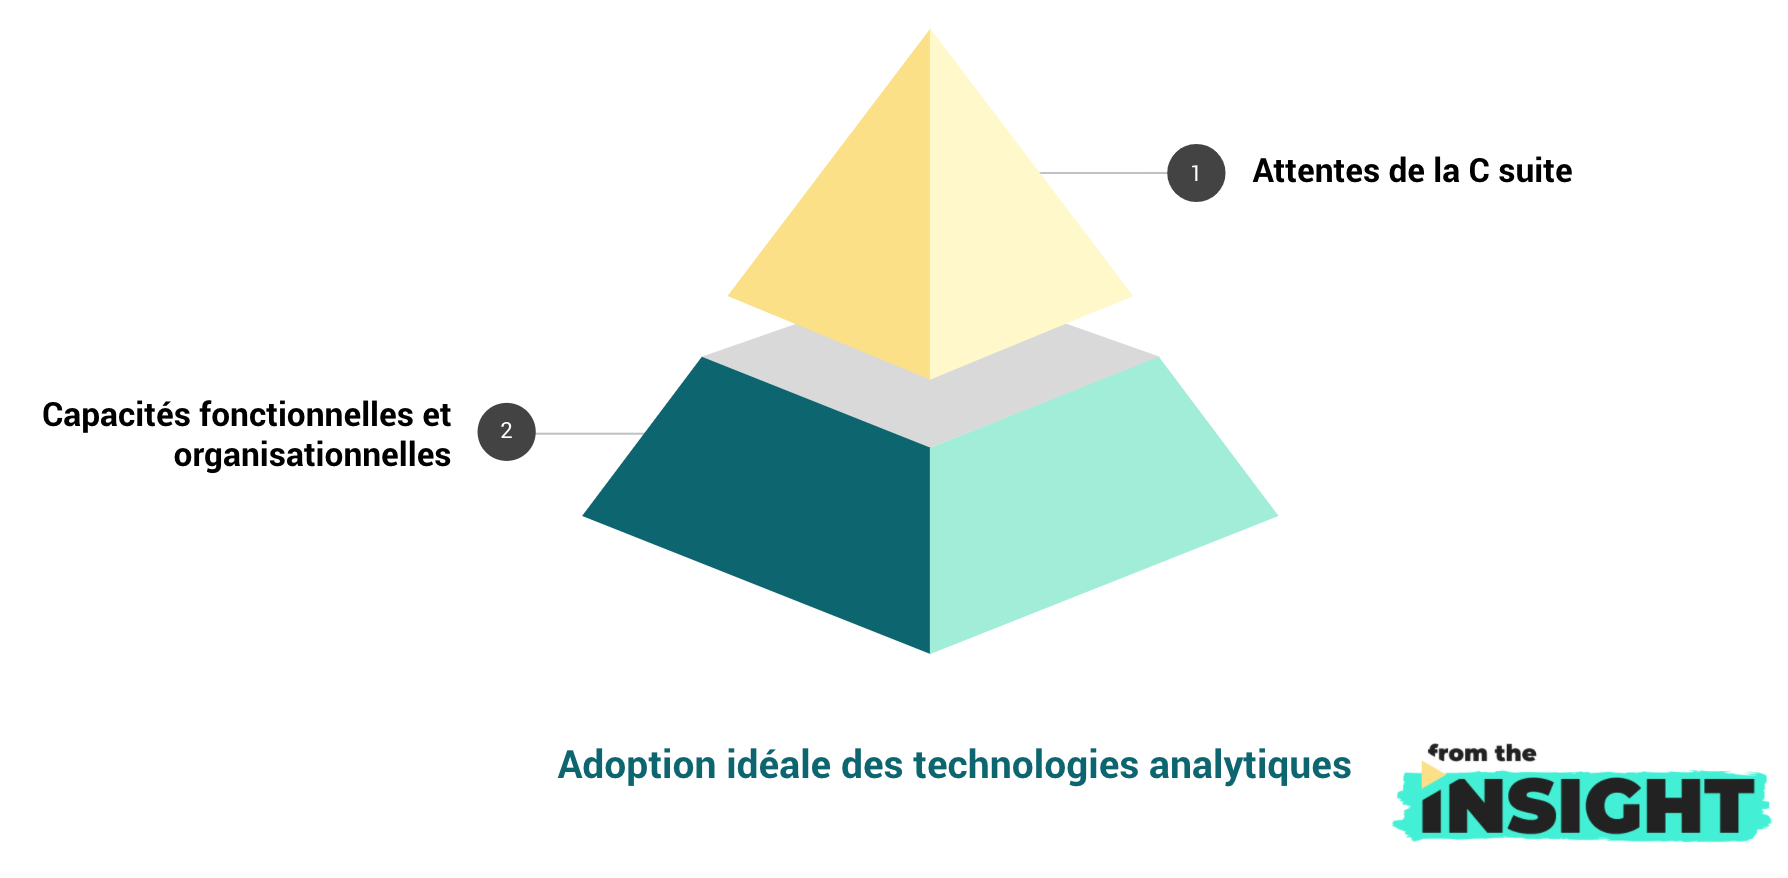 adoption des technologies analytiques : situation idéale